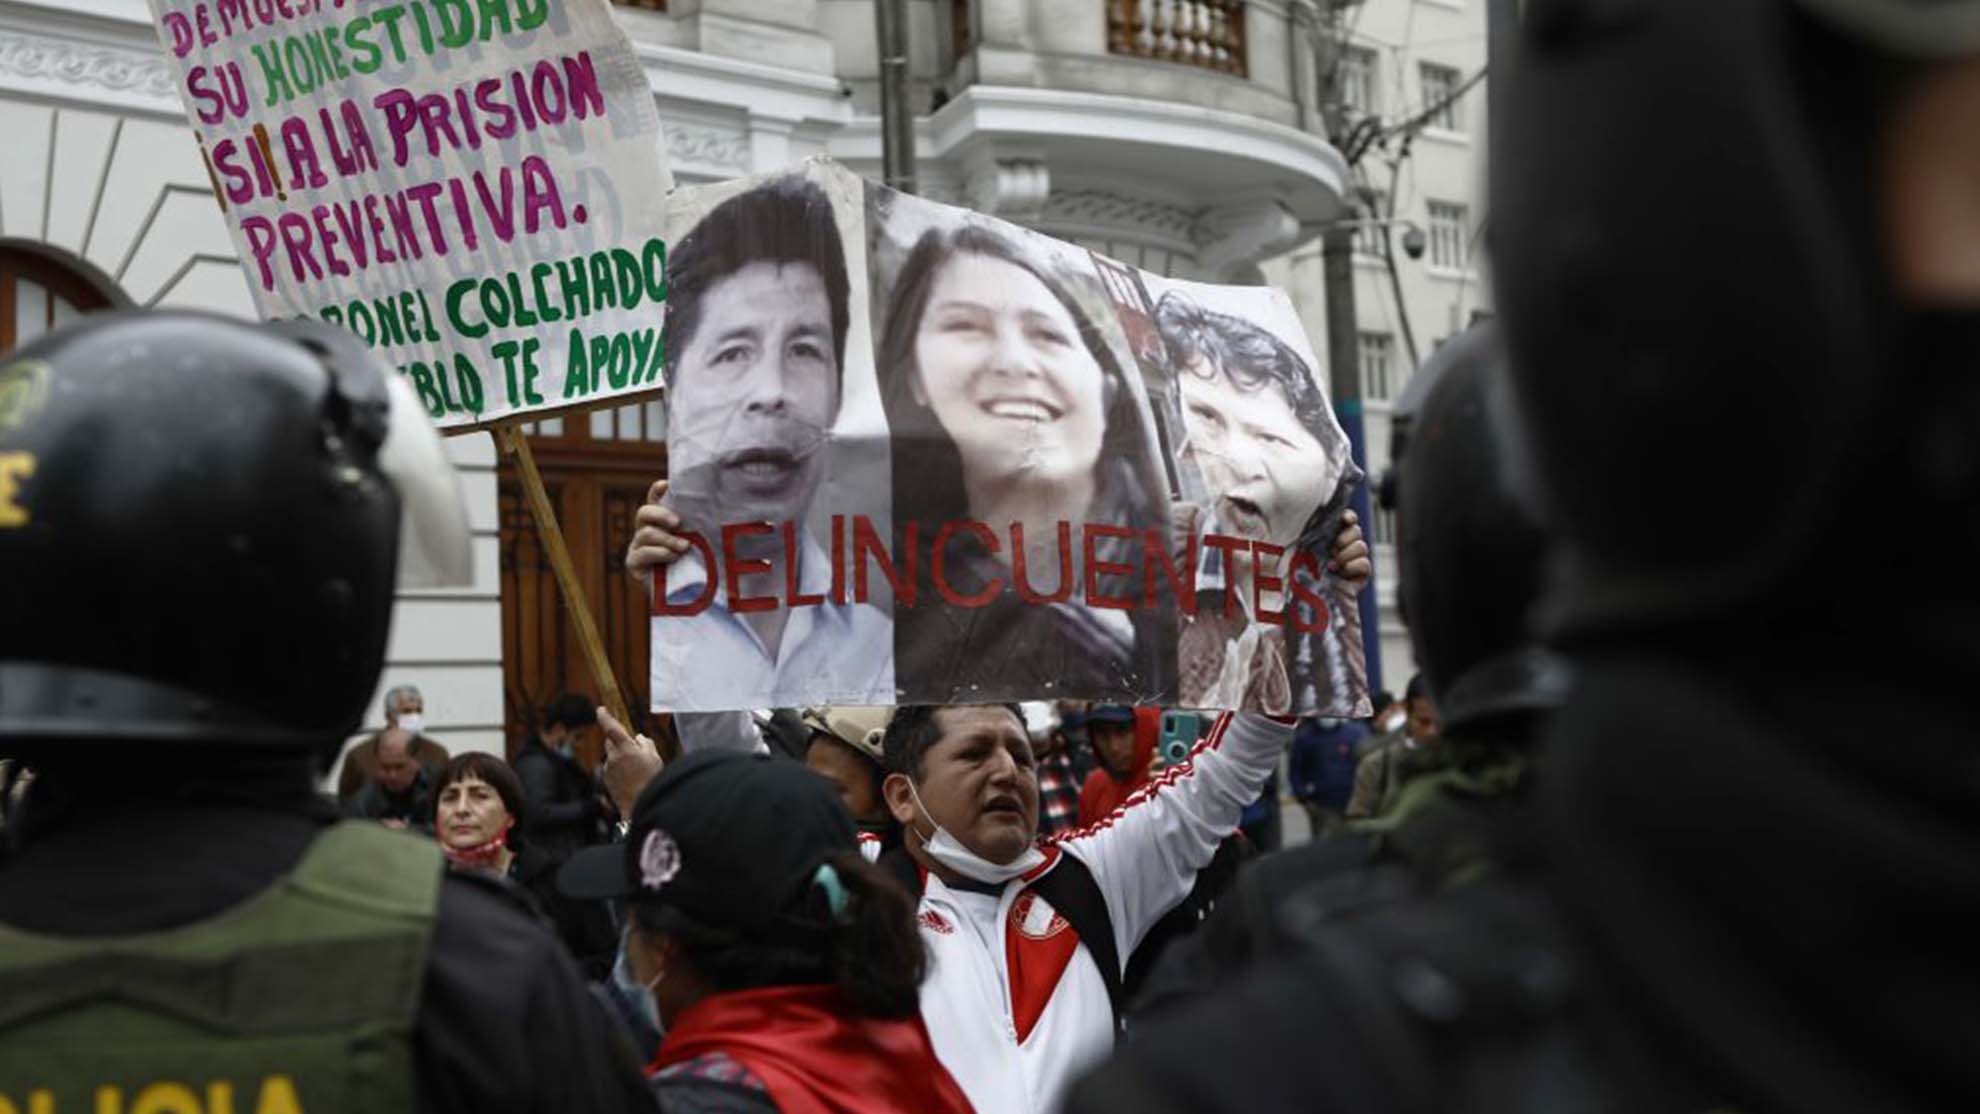 Directo a prisión: juez impone más de dos años para la “hija” del presidente de Perú